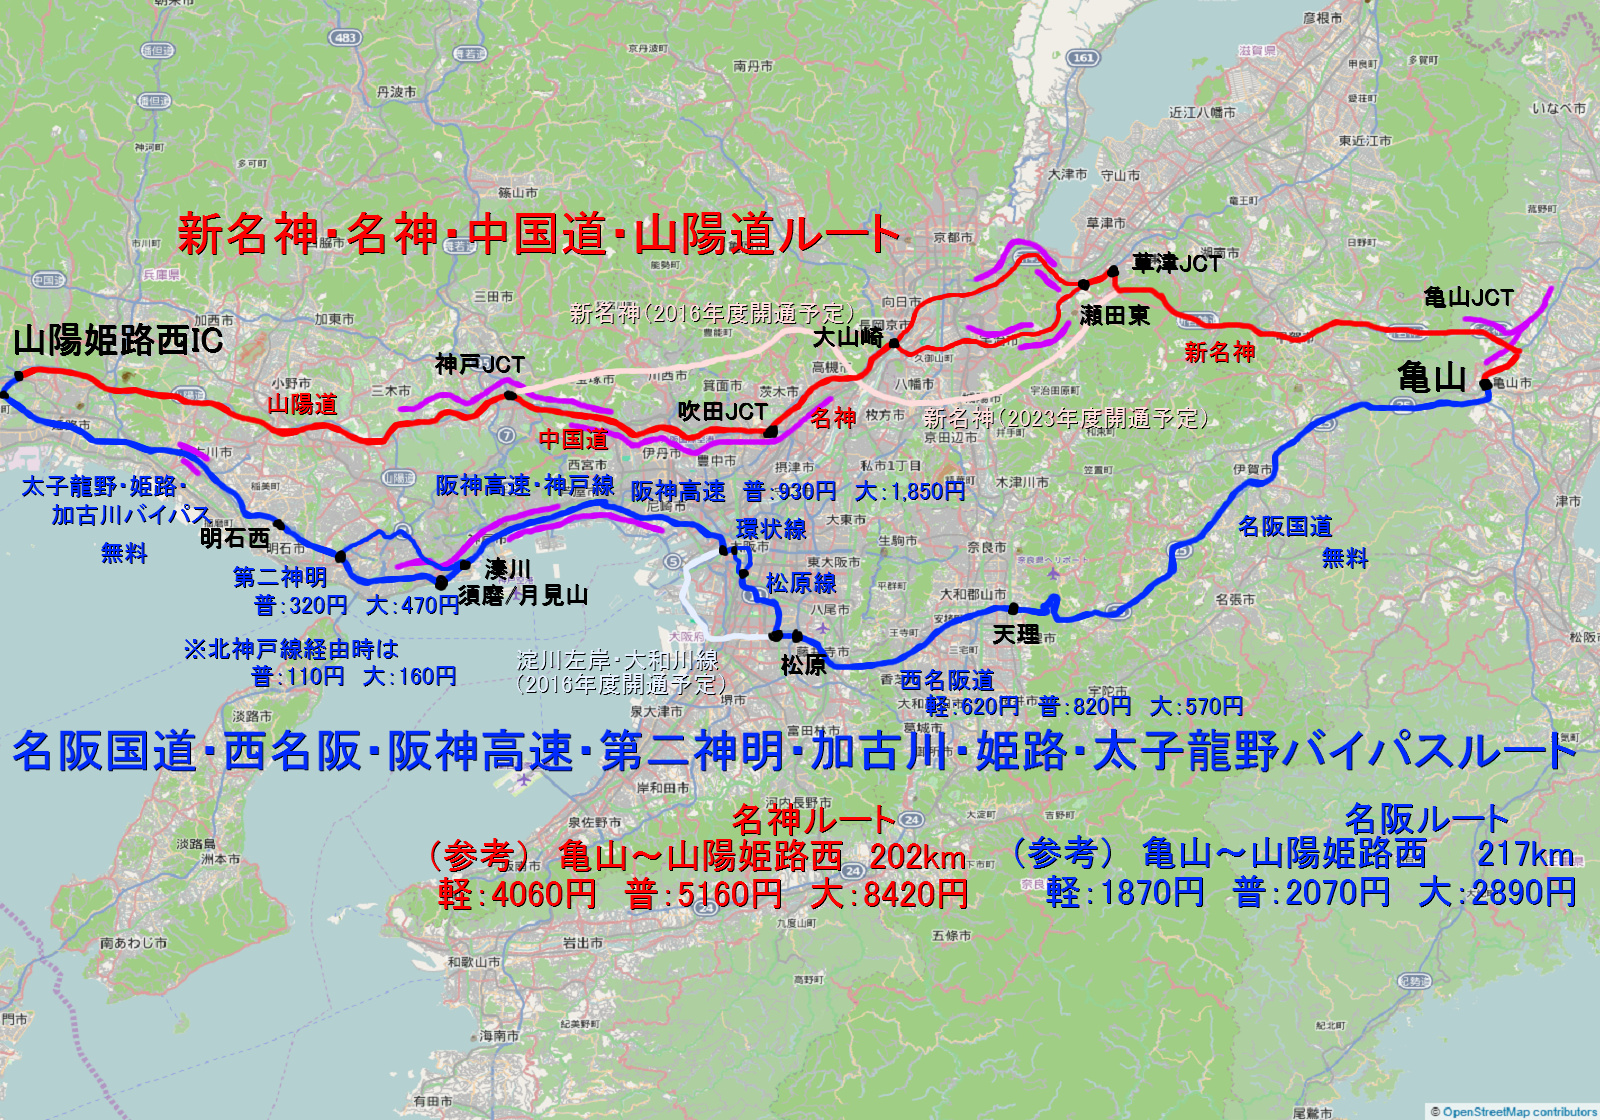 阪 名神 道路 名 連絡 滋賀と三重を結ぶ「名神名阪連絡道路」計画が始動 大型トラックが通る通学路の交通量軽減などにも期待